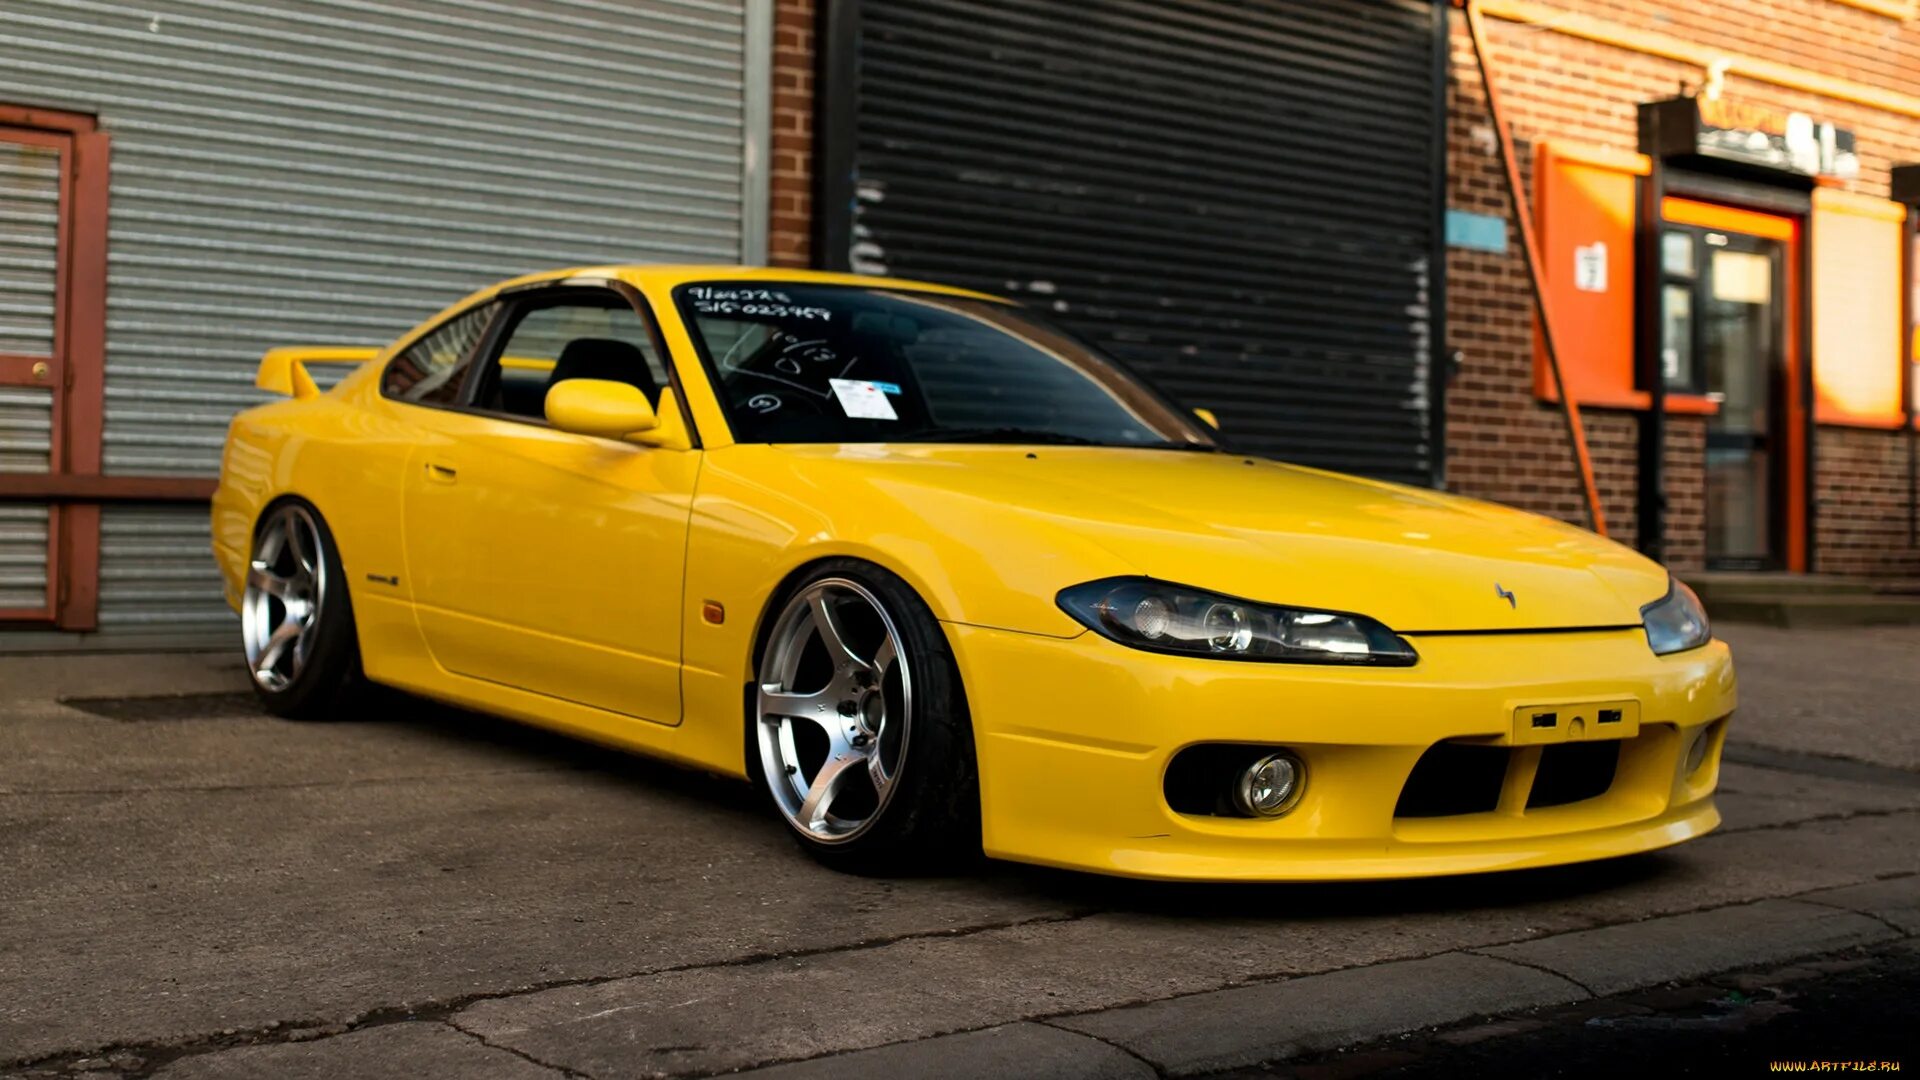 Silvia. Nissan Silvia s15. Nissan Silvia s15 Yellow.